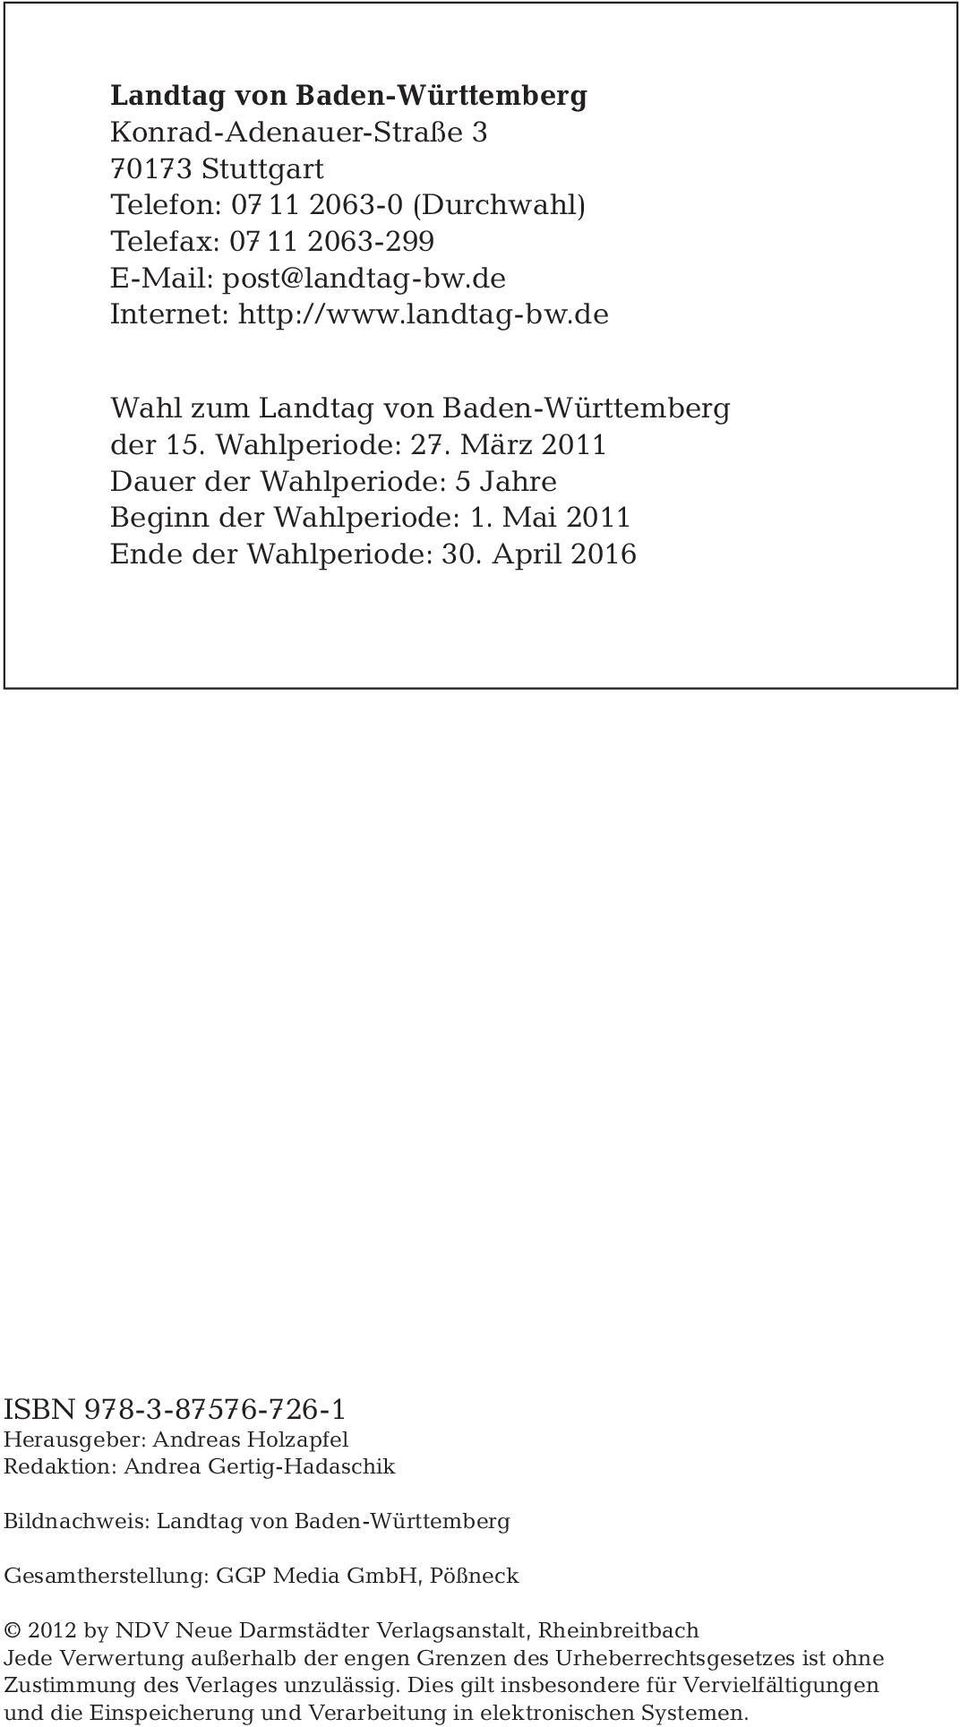 April 2016 ISBN 978-3-87576-726-1 Herausgeber: Andreas Holzapfel Redaktion: Andrea Gertig-Hadaschik Bildnachweis: Landtag von Baden-Württemberg Gesamtherstellung: GGP Media GmbH, Pößneck 2012 by NDV